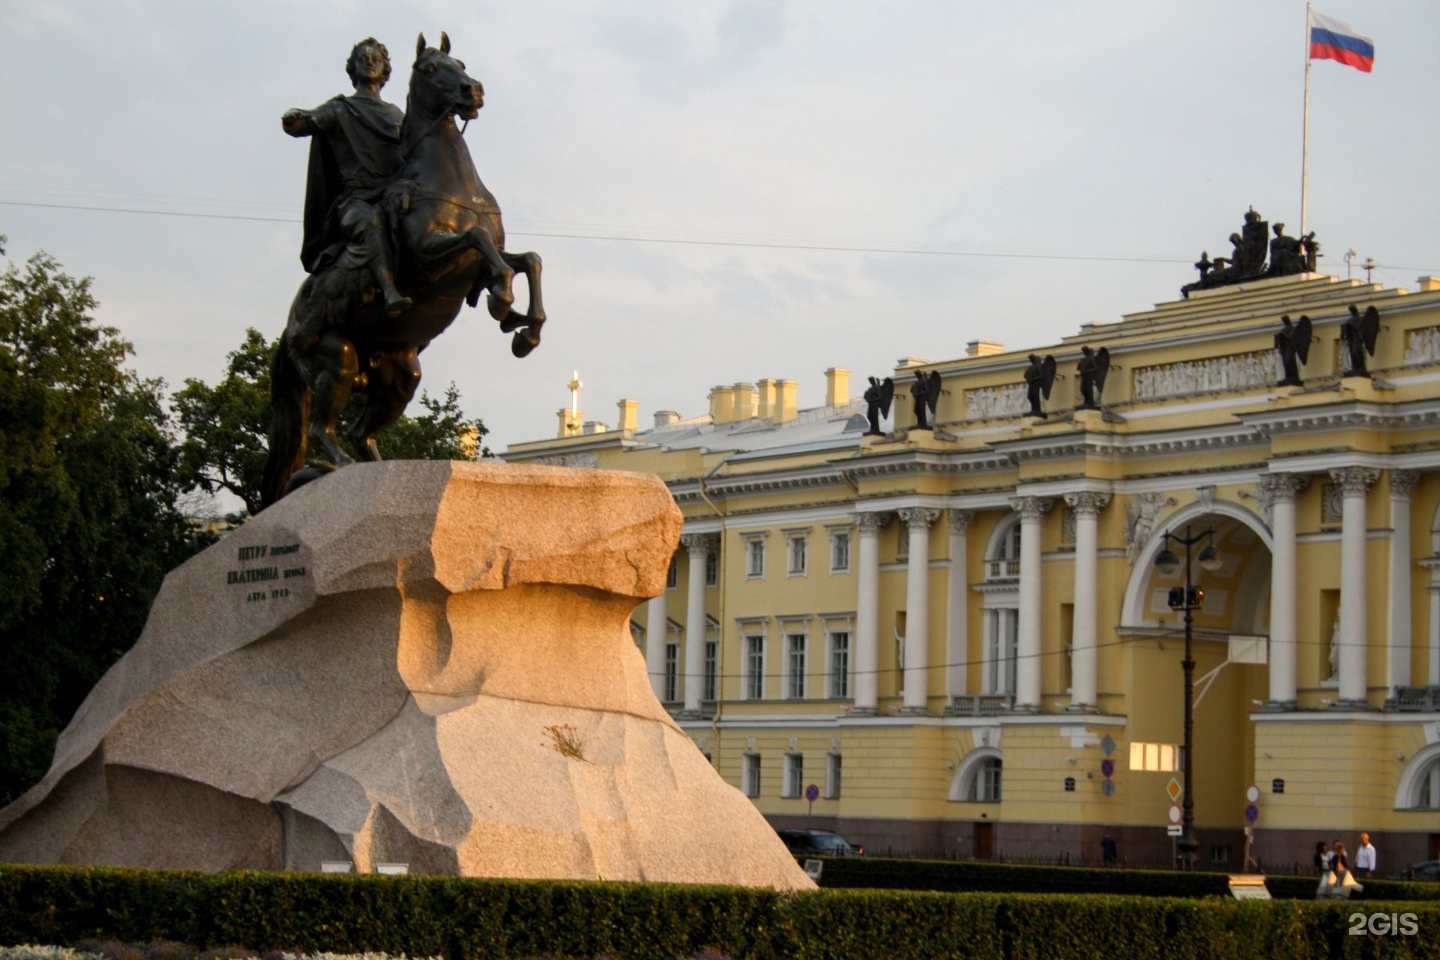 Памятники санкт петербурга фото с названиями и описанием для детей